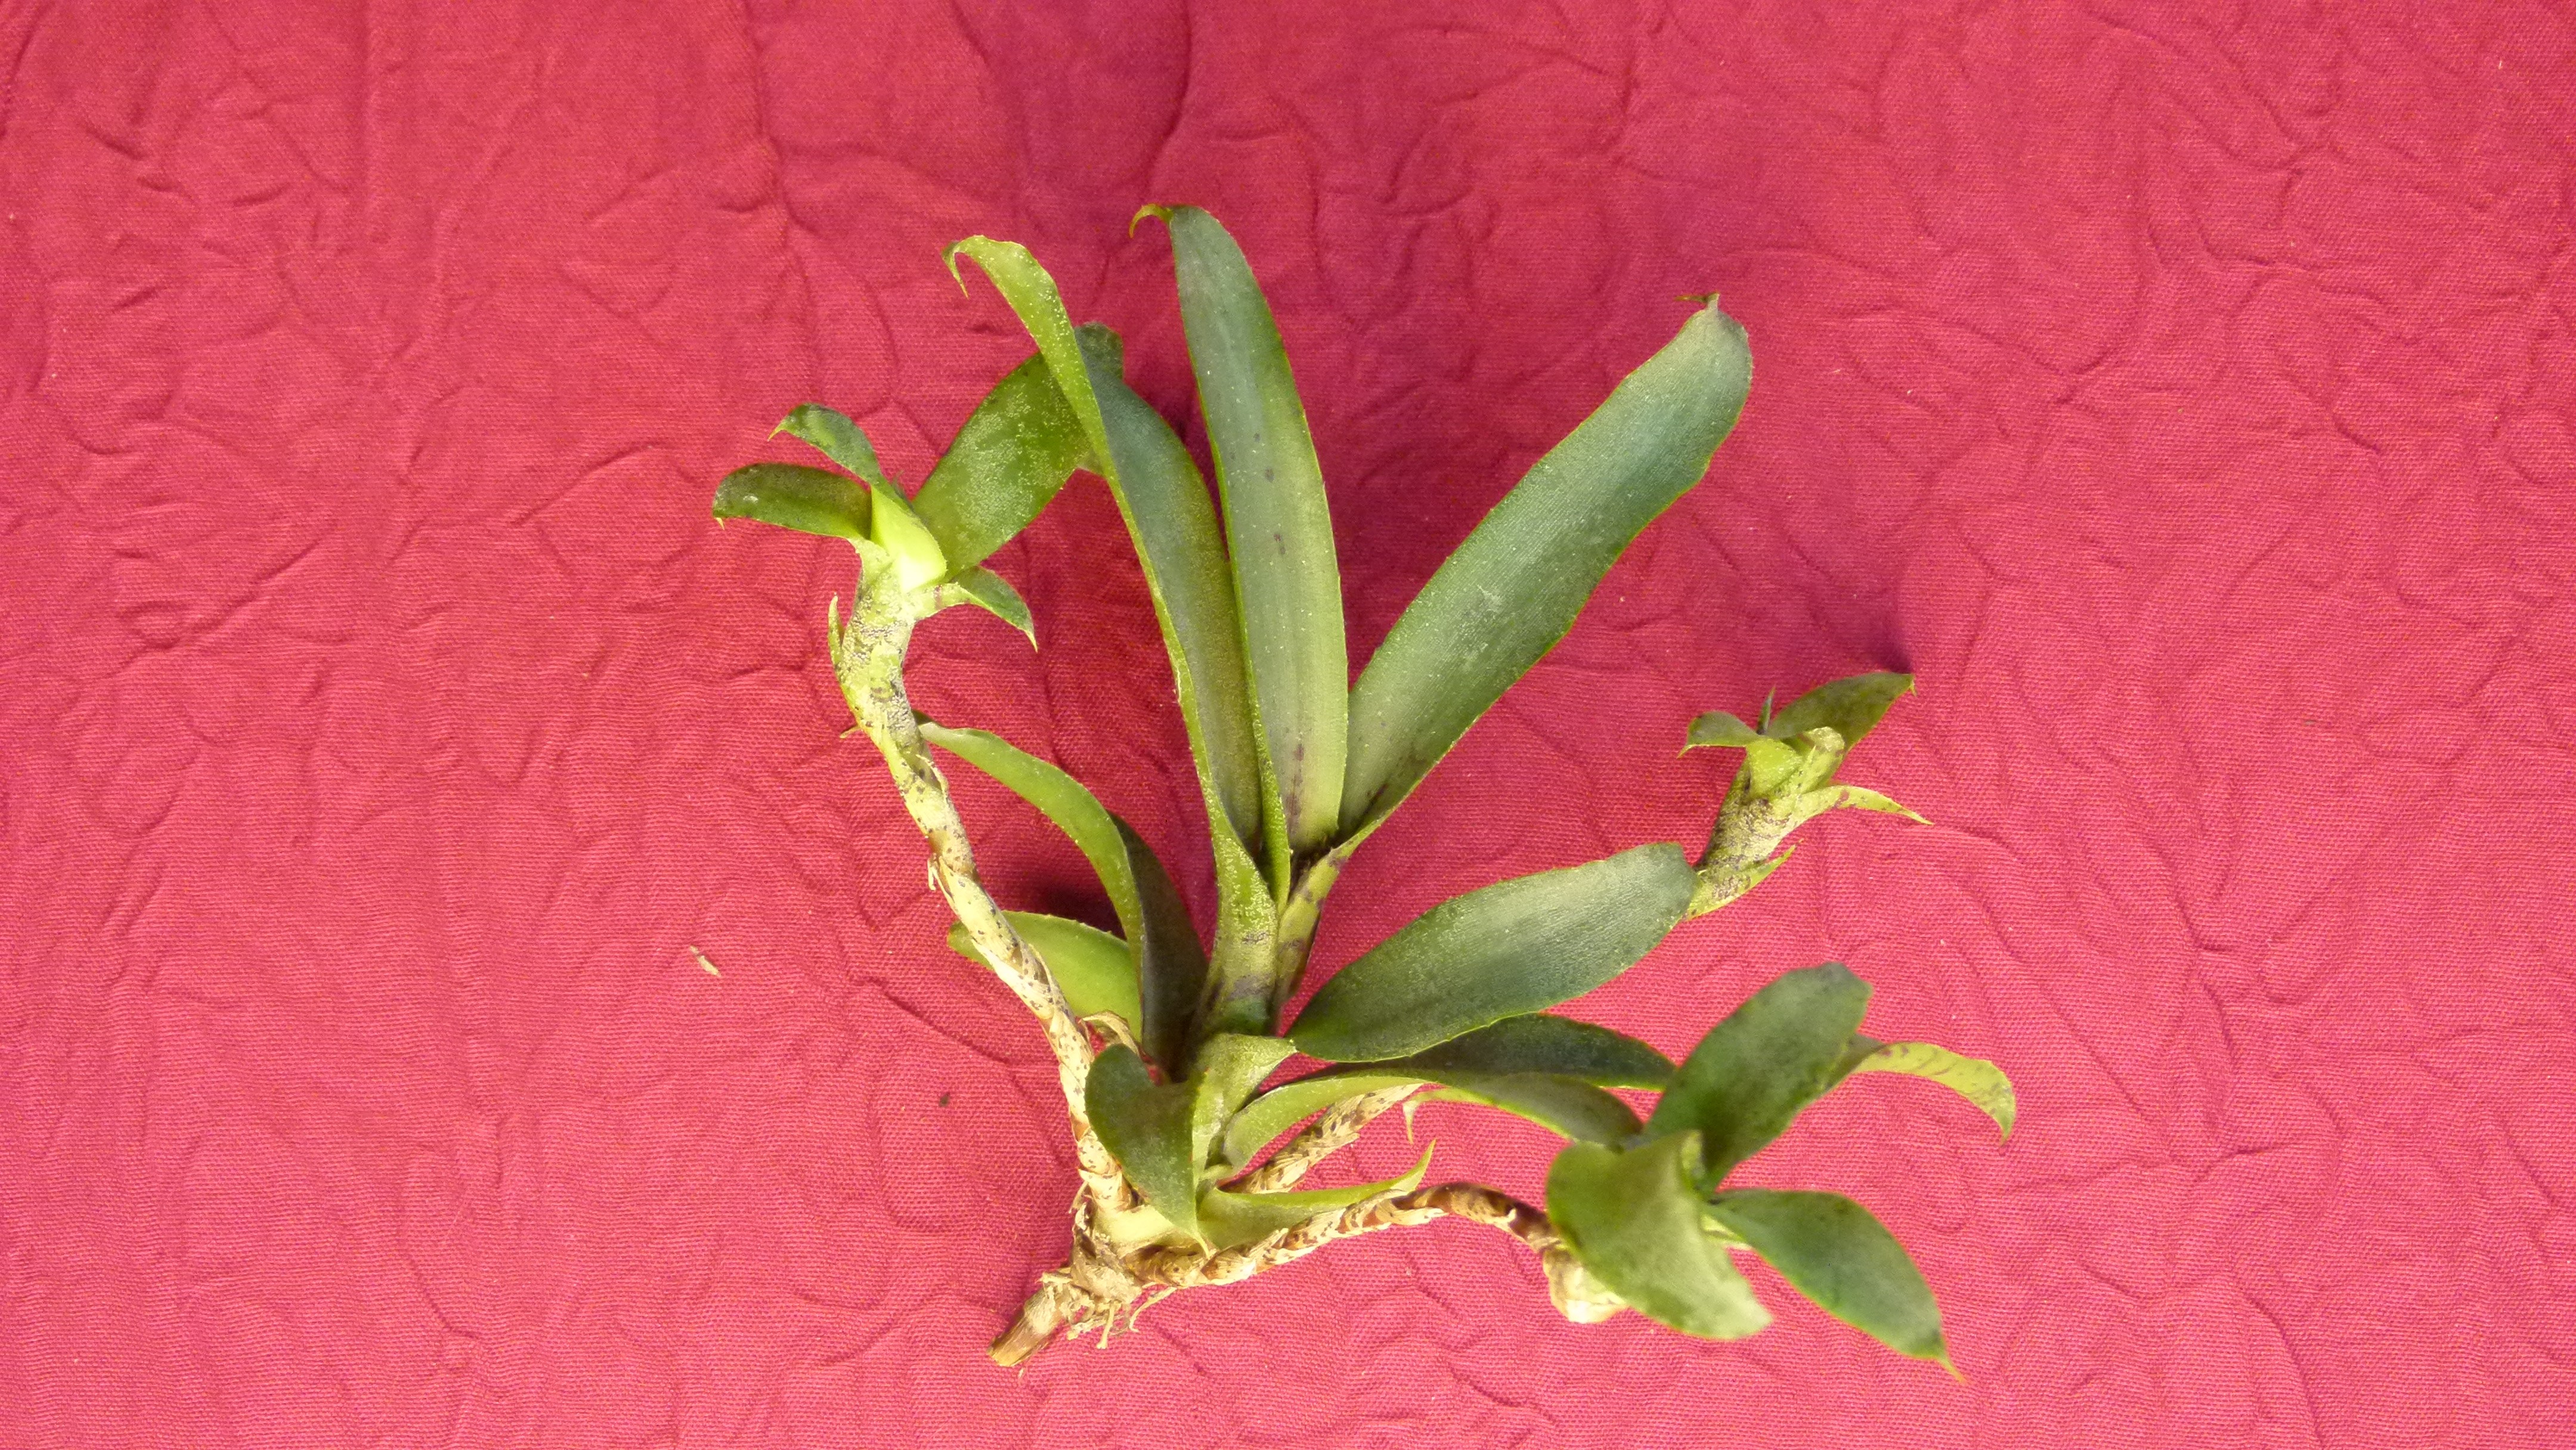 Exemple de Neoregelia liliputiana qui est  la plus petite des Neoregelias connues et cultivées. Possède une très forte capacité de production de rejets (3 sur la photo).